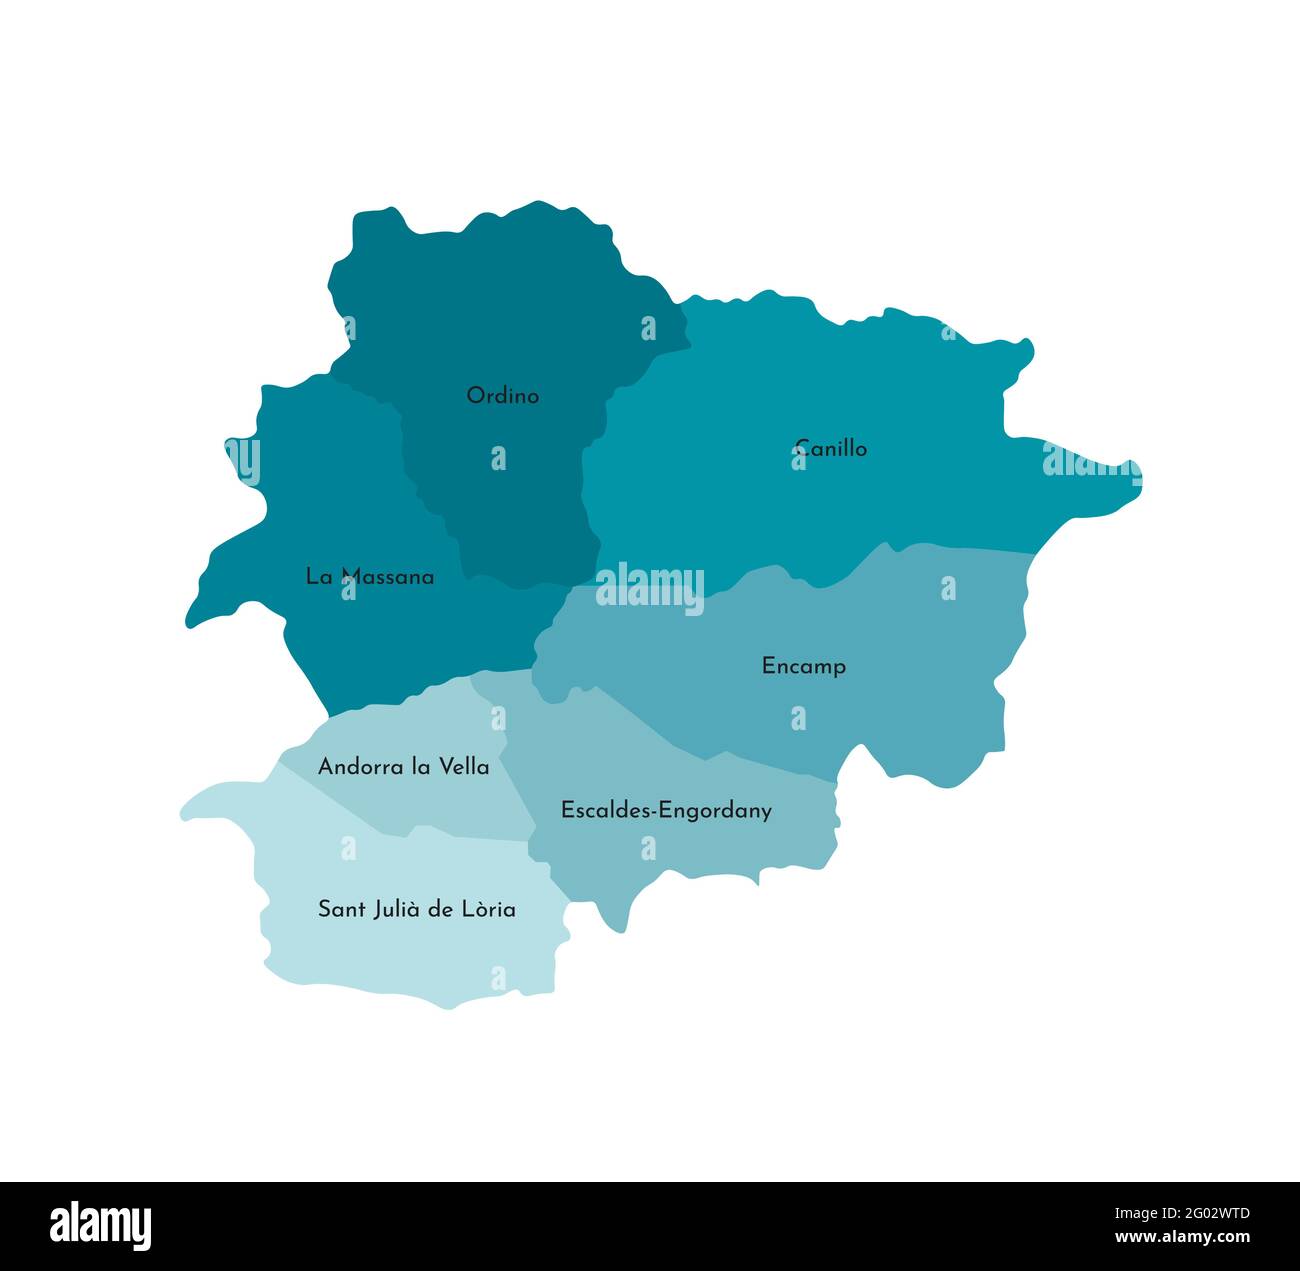 Ilustración vectorial aislada del mapa administrativo simplificado de Andorra. Fronteras y nombres de las parroquias (regiones). Siluetas de colores azul caqui Ilustración del Vector